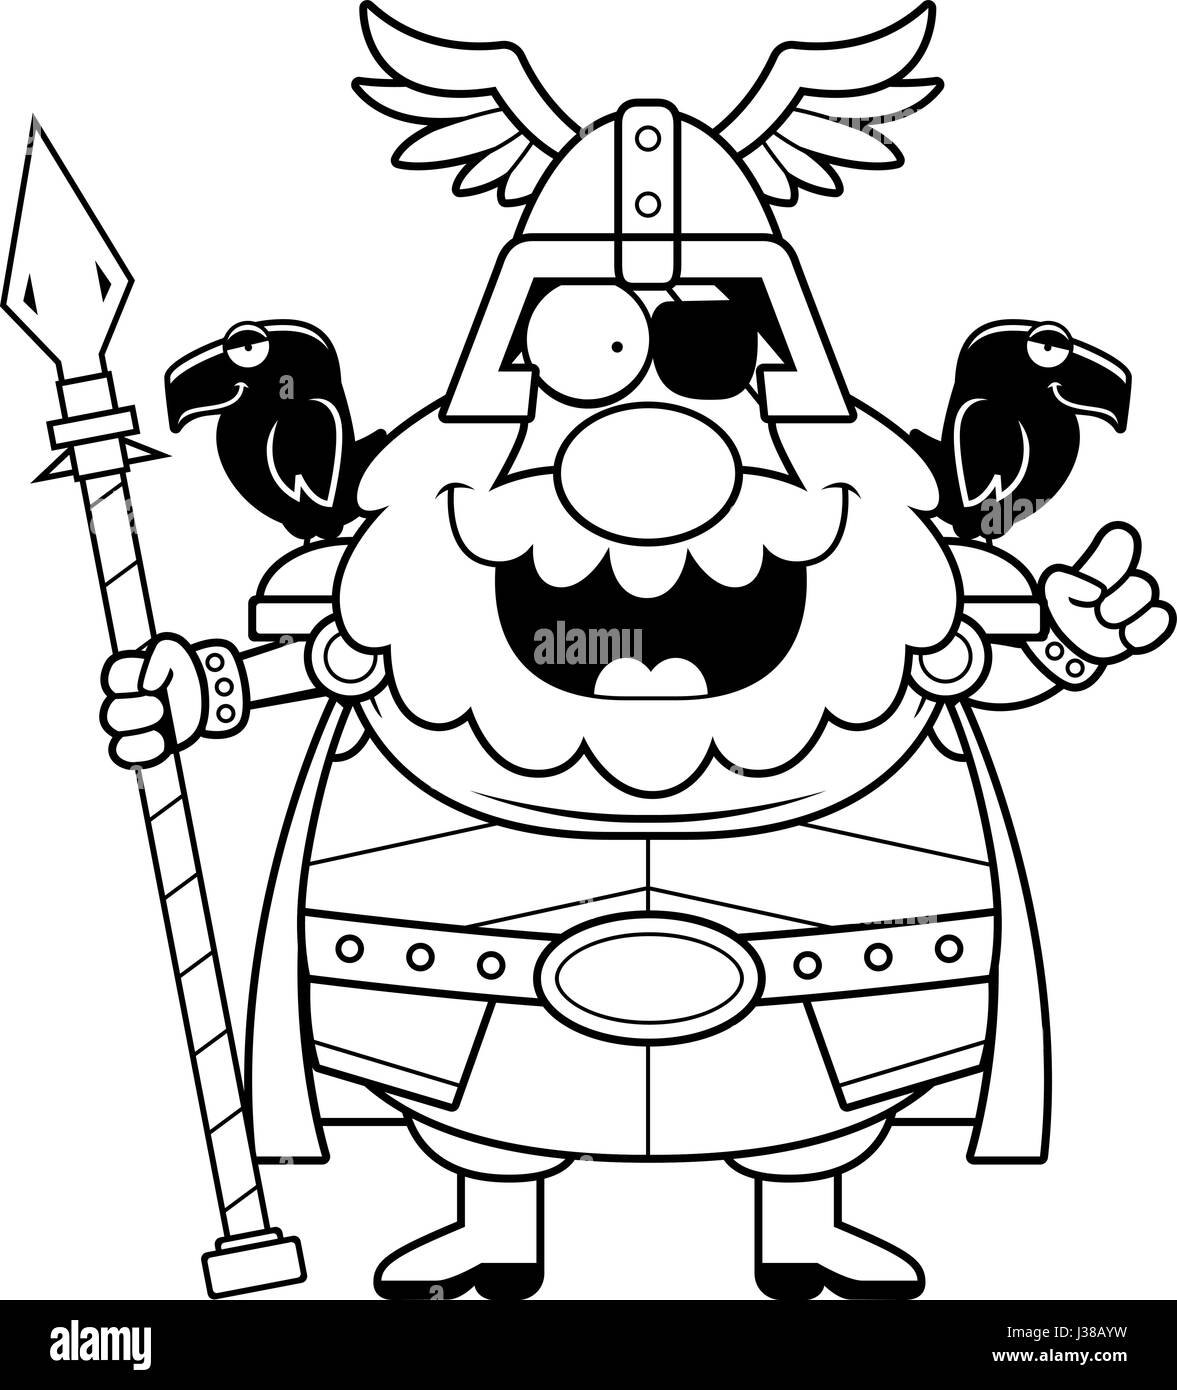 Eine Karikatur Illustration von Odin mit einer Idee. Stock Vektor